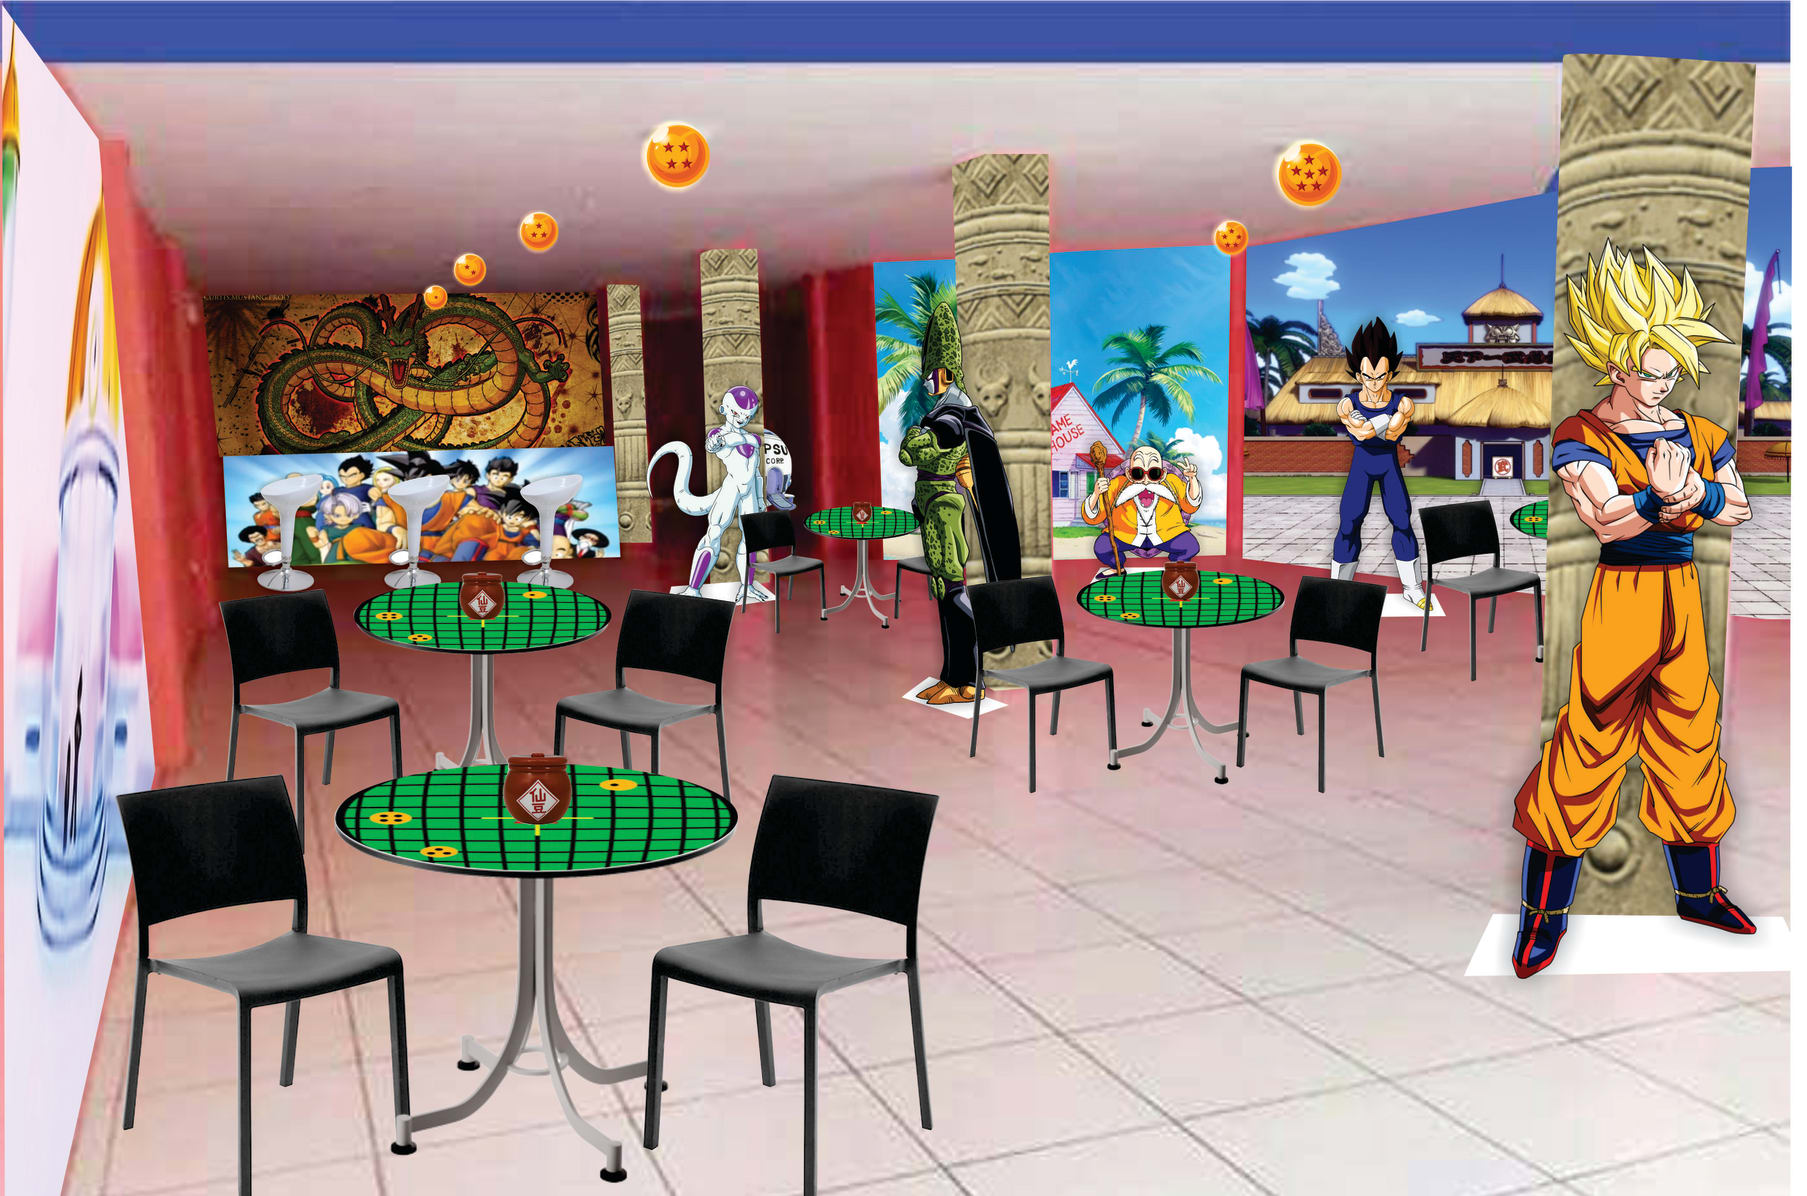 Dragon Ball Z Themed Restaurant Saiyajin Buffet Indiegogo